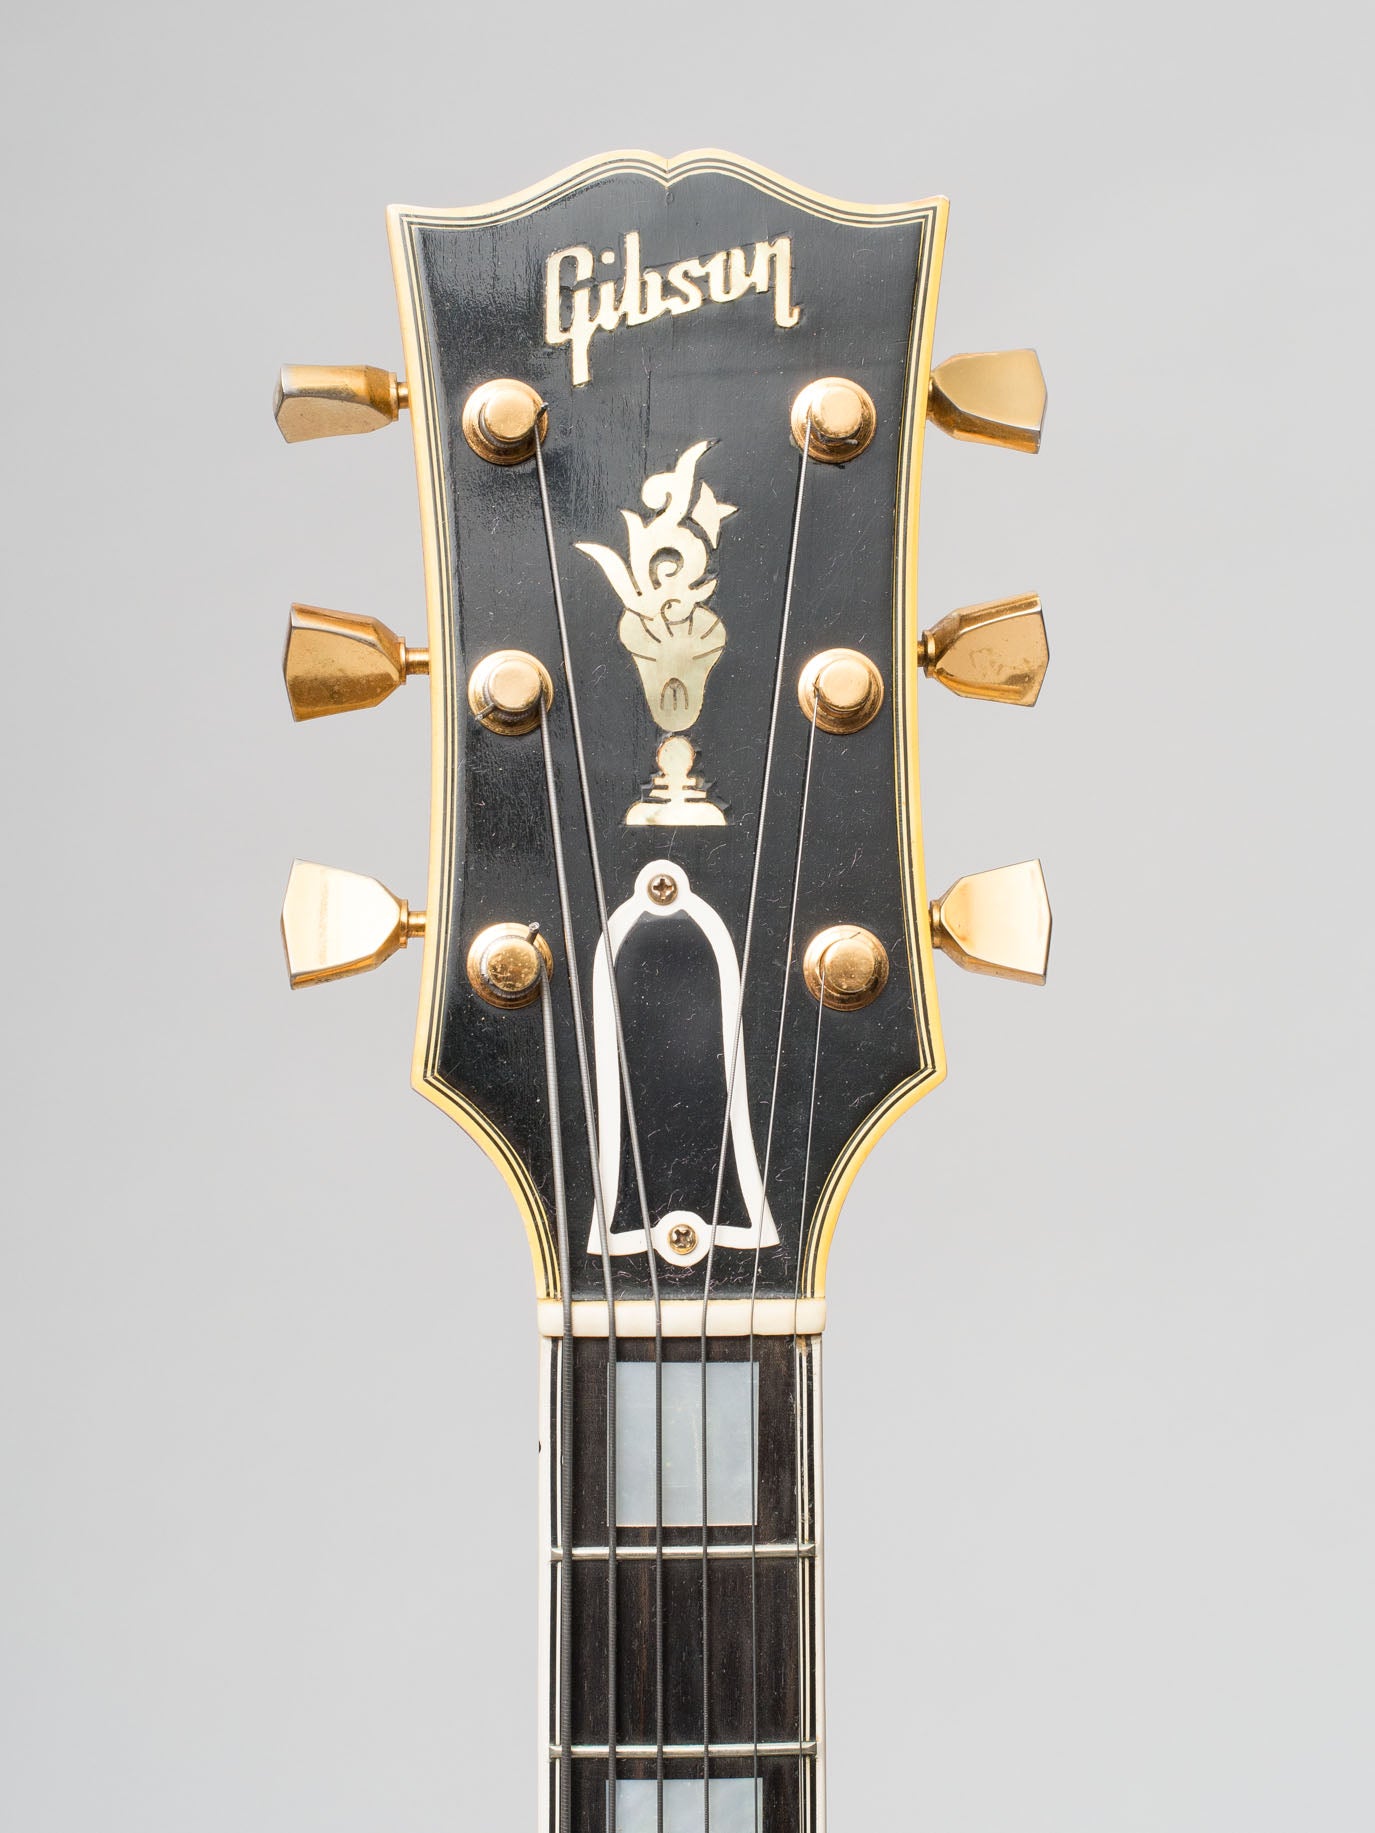 1956 Gibson Byrdland